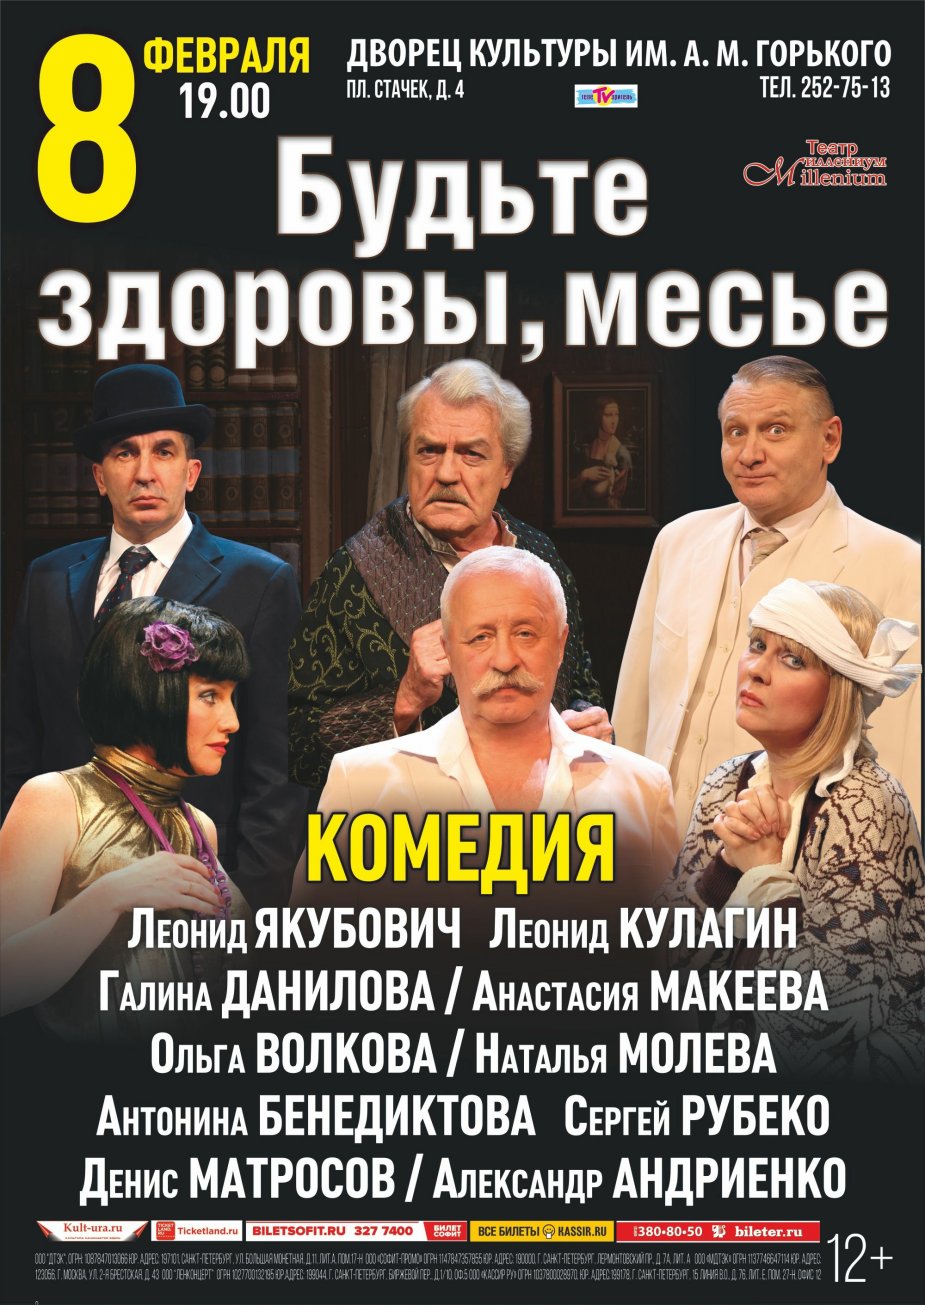 Комедия “Будьте здоровы, месье” на сцене ДК Горького